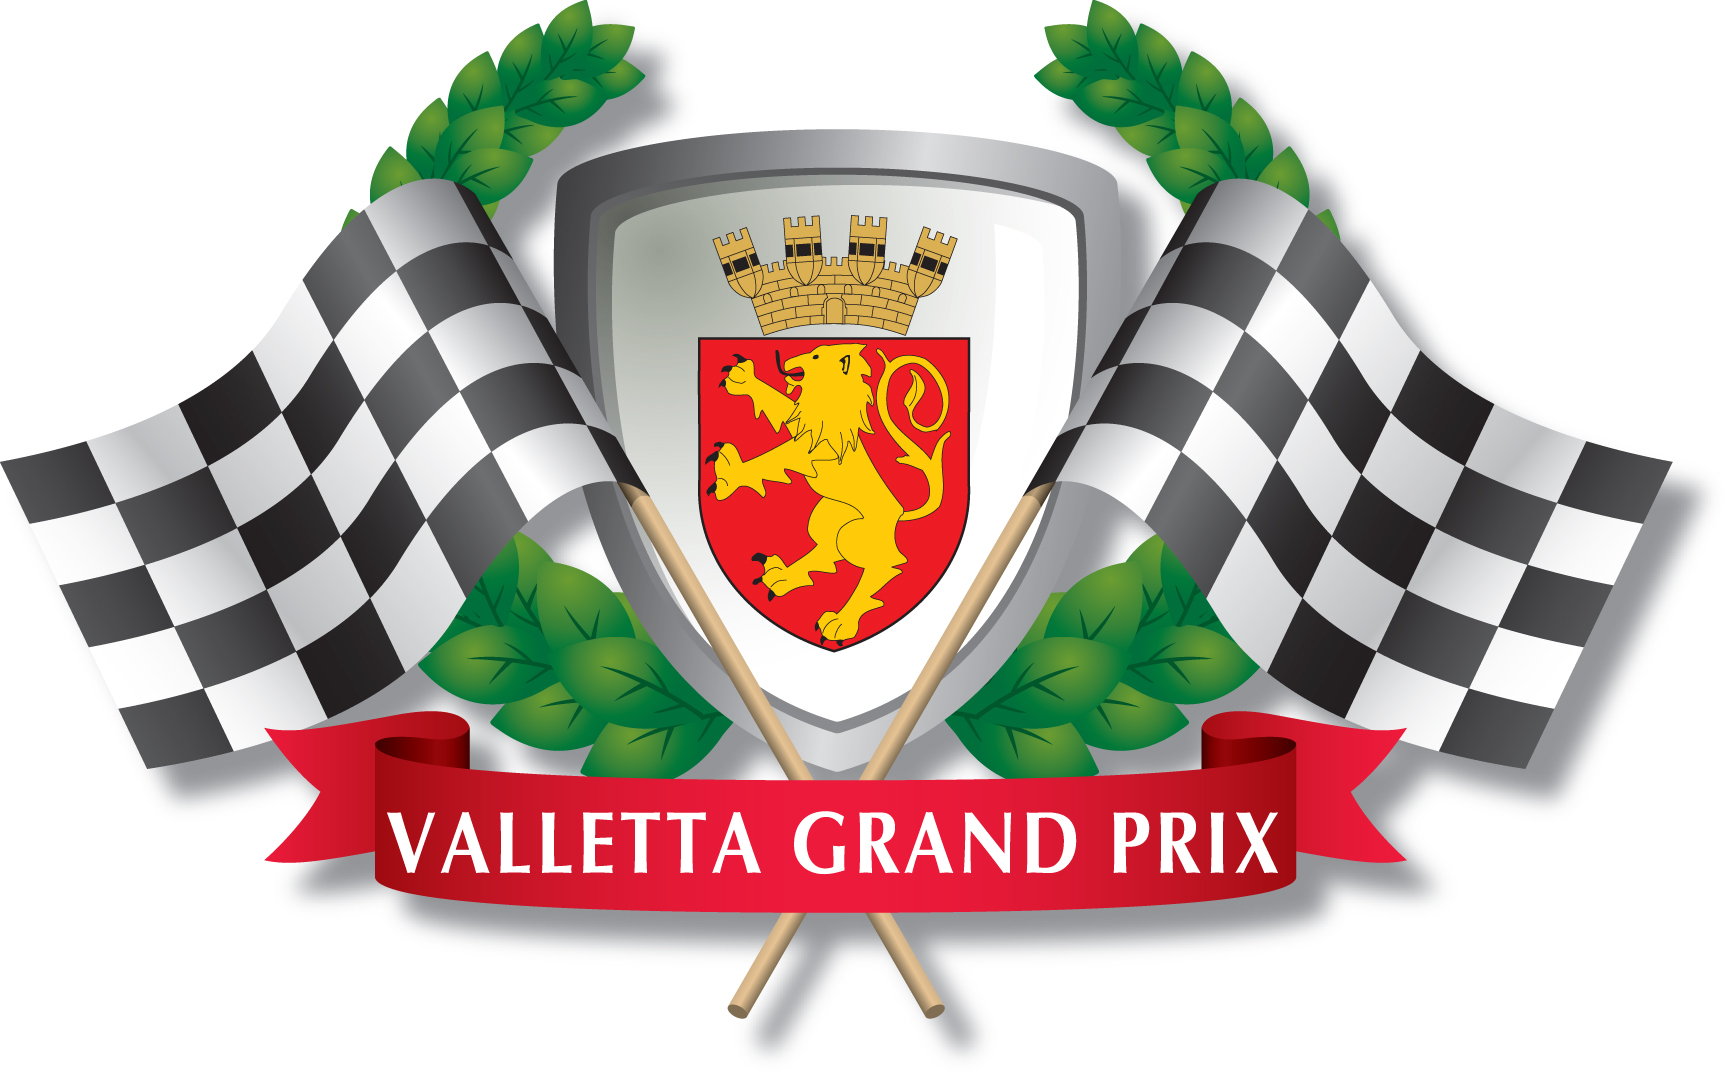 Valletta Grand Prix Foundation